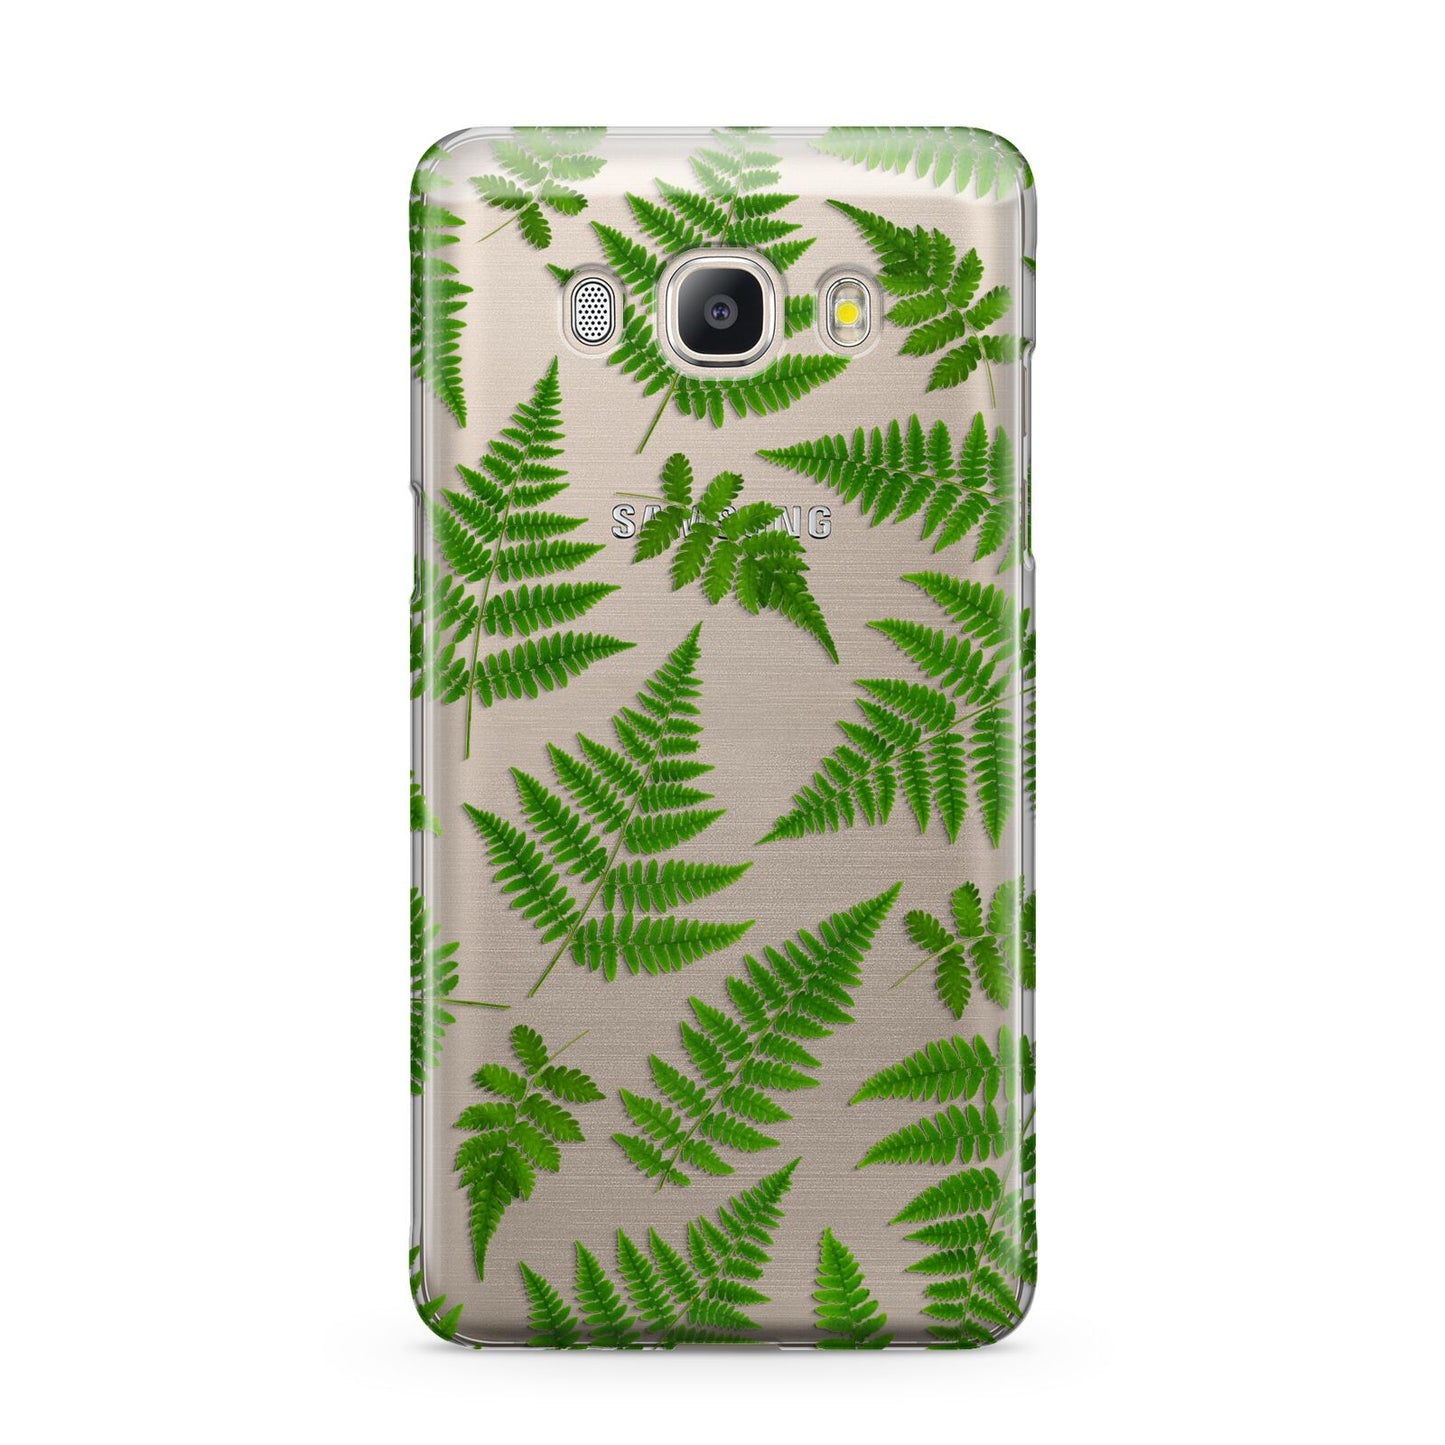 Fern Leaf Samsung Galaxy J5 2016 Case